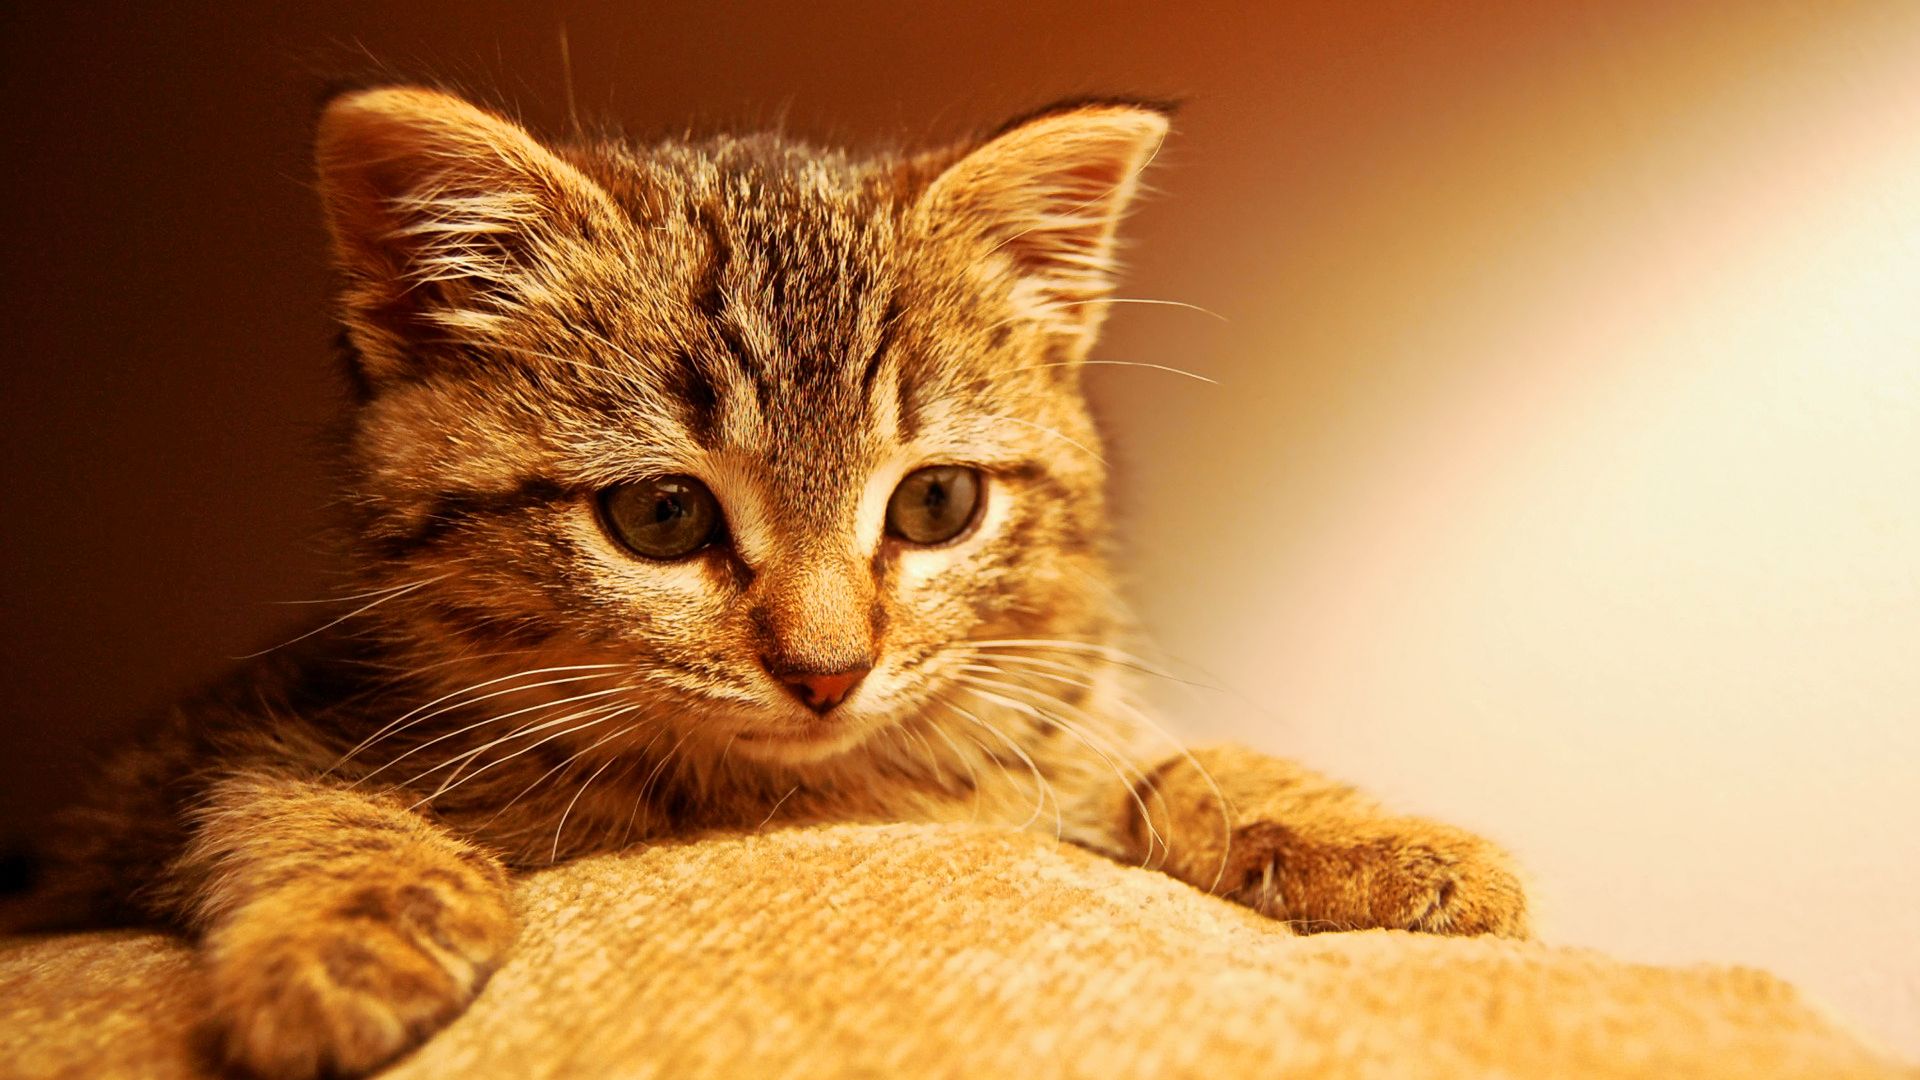 Free Download Cute Kitten Wallpapers for Desktop 